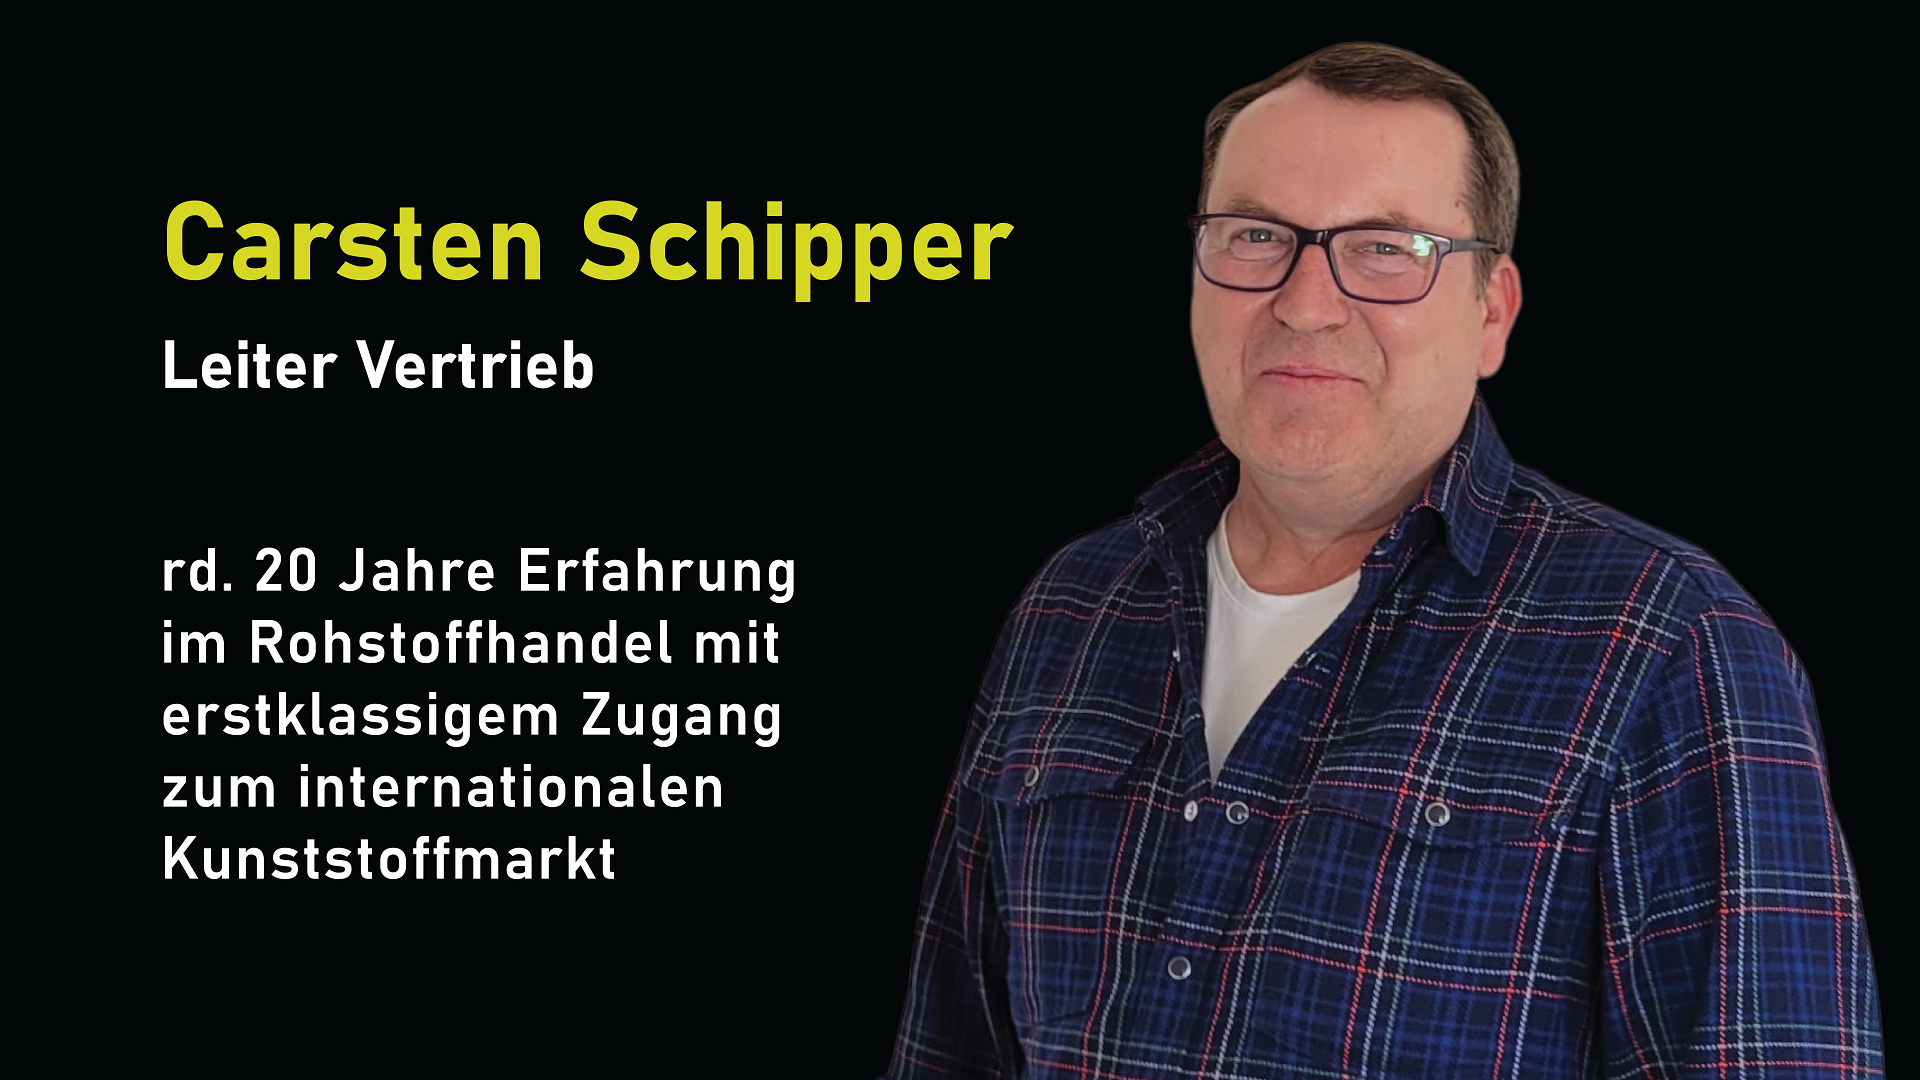 PBS Leiter Vertrieb Schipper